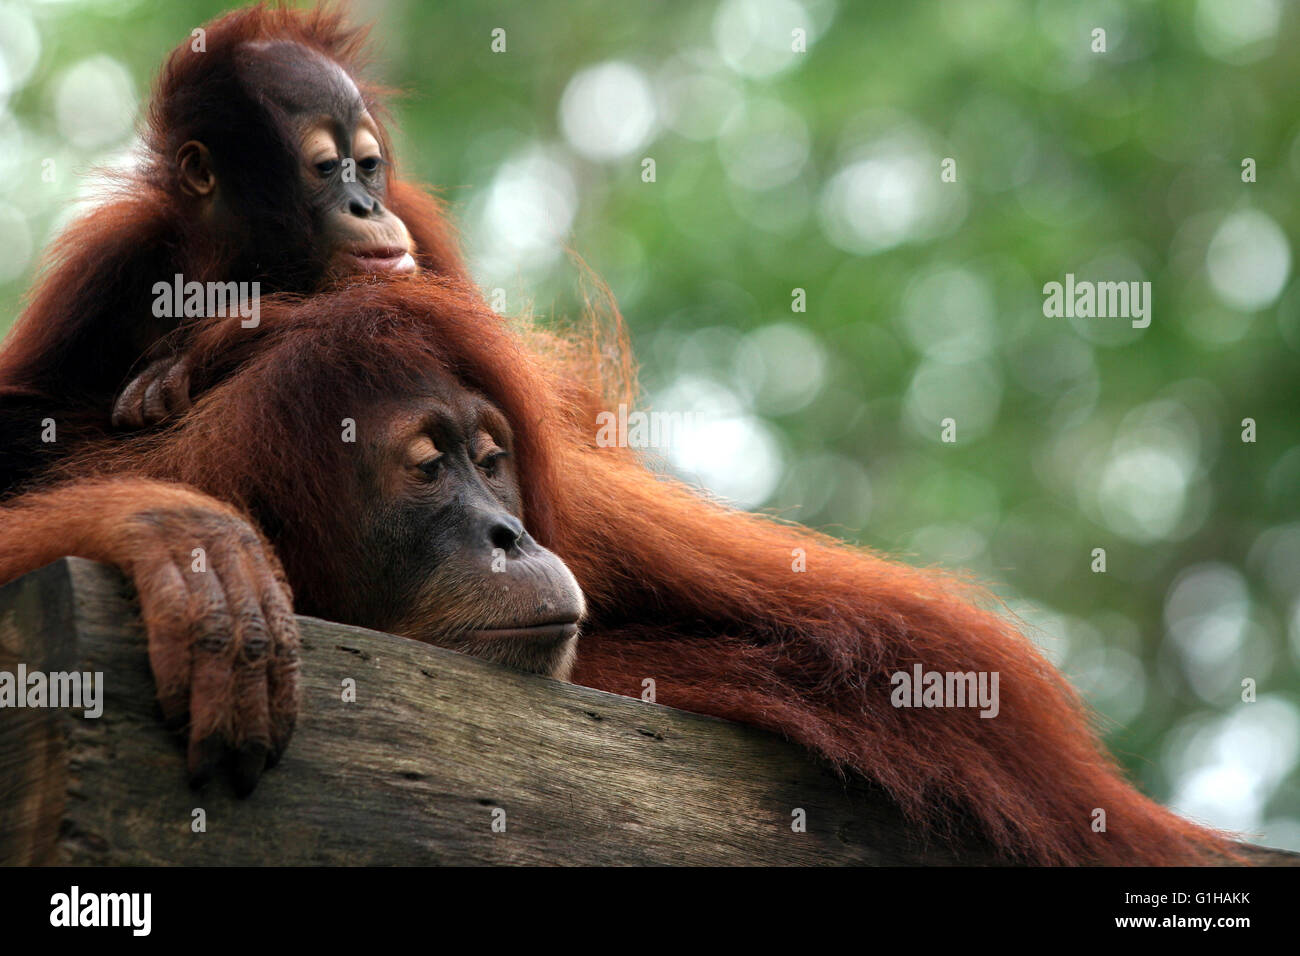 Monkey orangutan Stock Photo